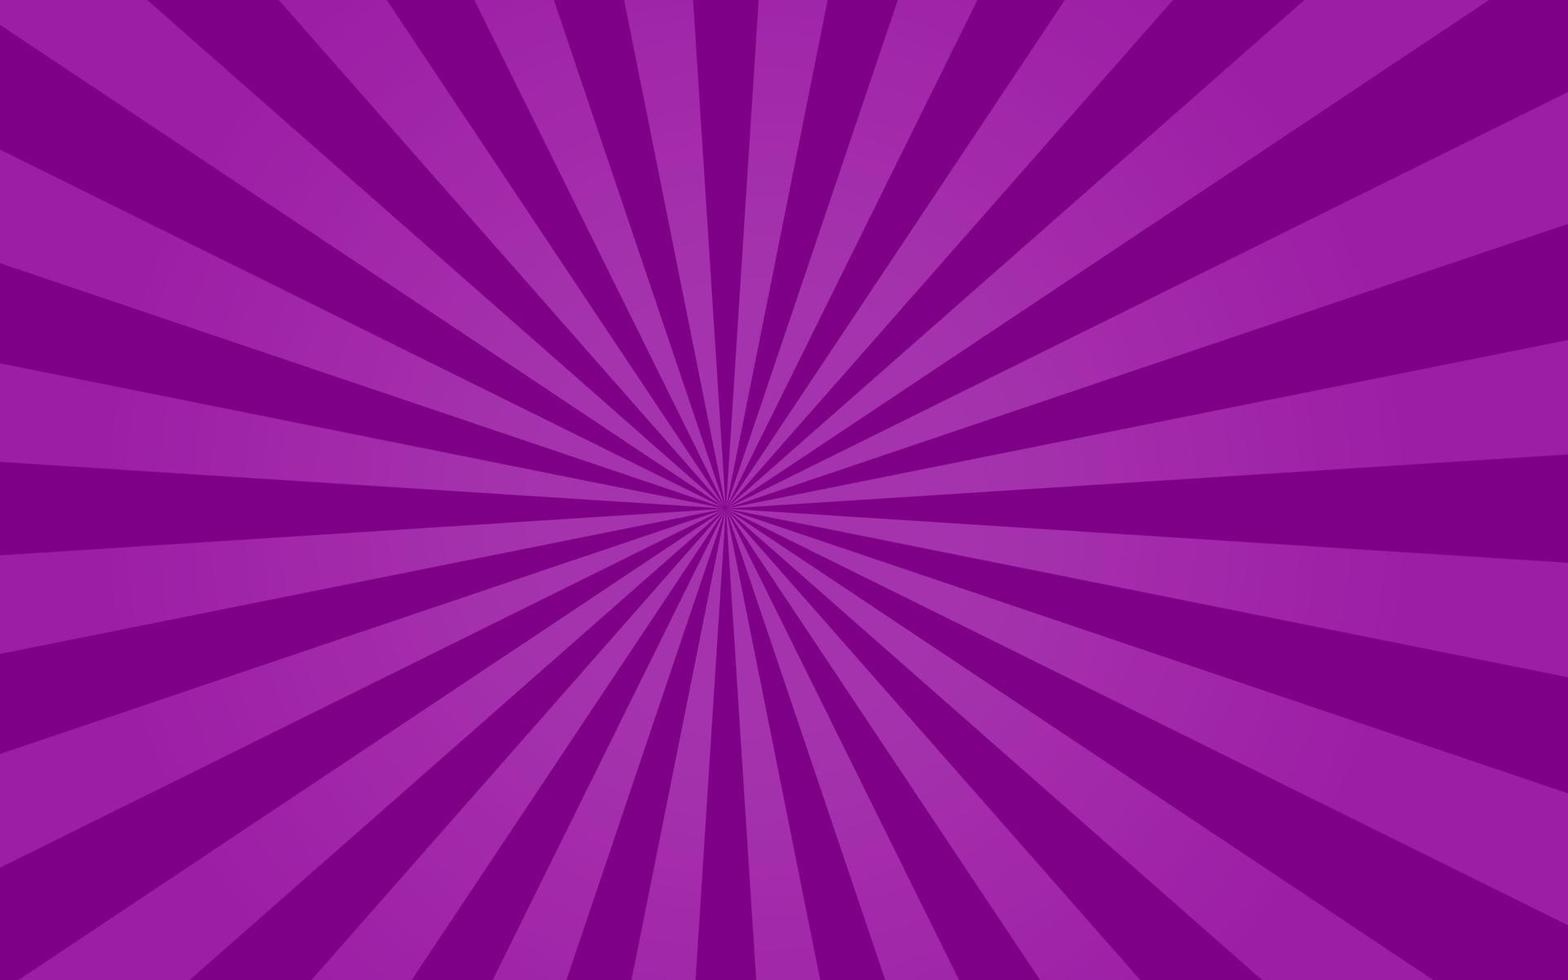 Sun rays Retro vintage style on purple background, Sunburst Pattern Background. Rays. Summer Banner Vector illustration